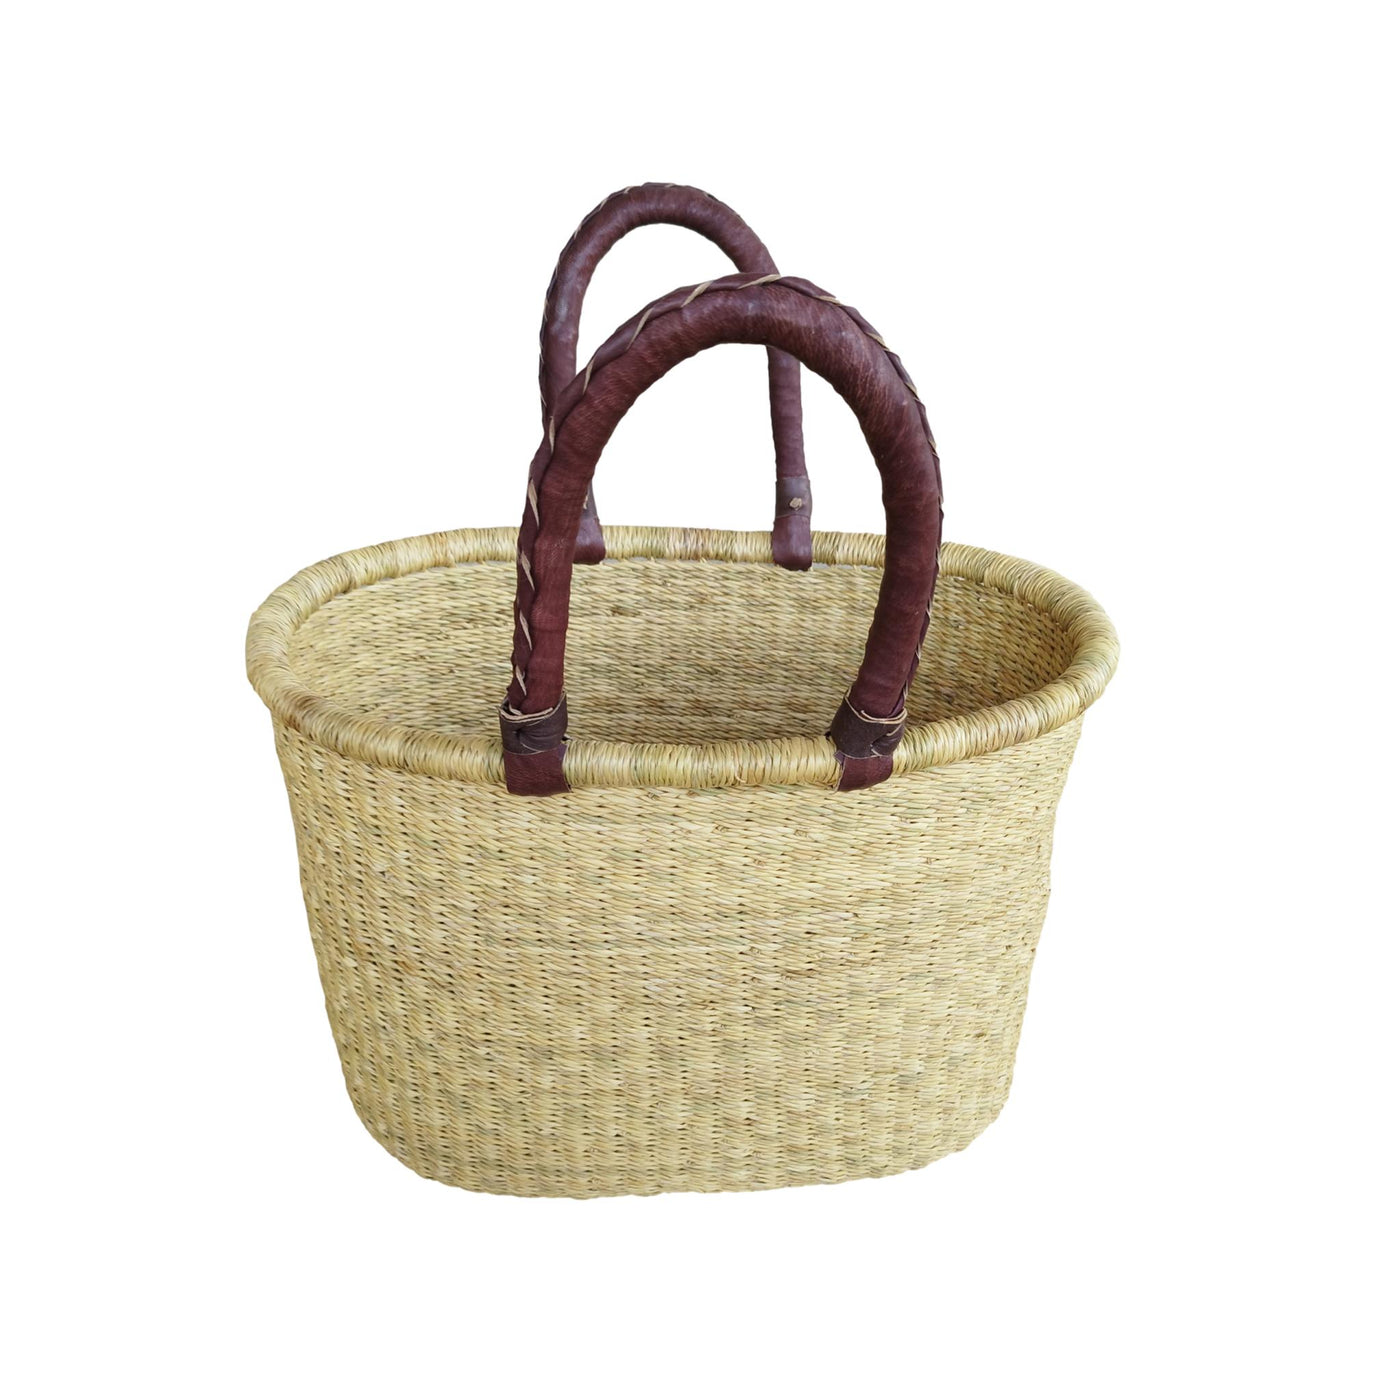 Woven basket | Wicker basket | Storage basket | Ester basket | Gift basket | Flower girl basket | African basket | Basket bag